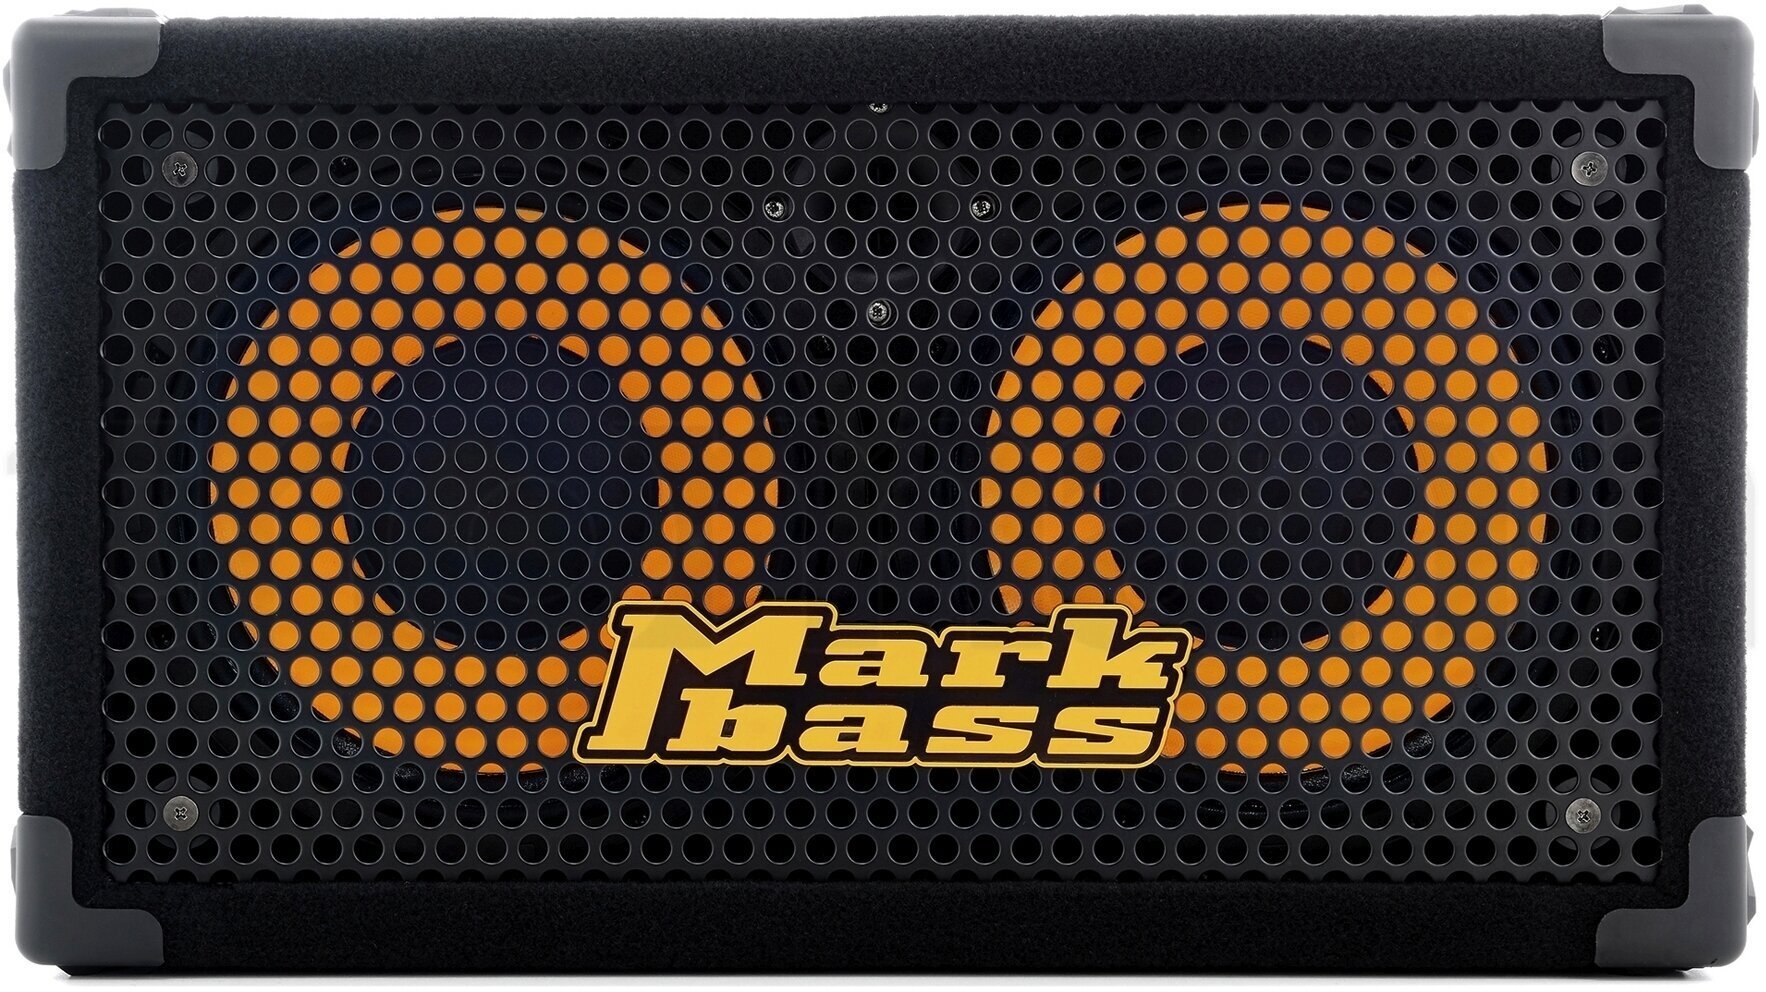 Bassbox Markbass Traveler 102 P - 8